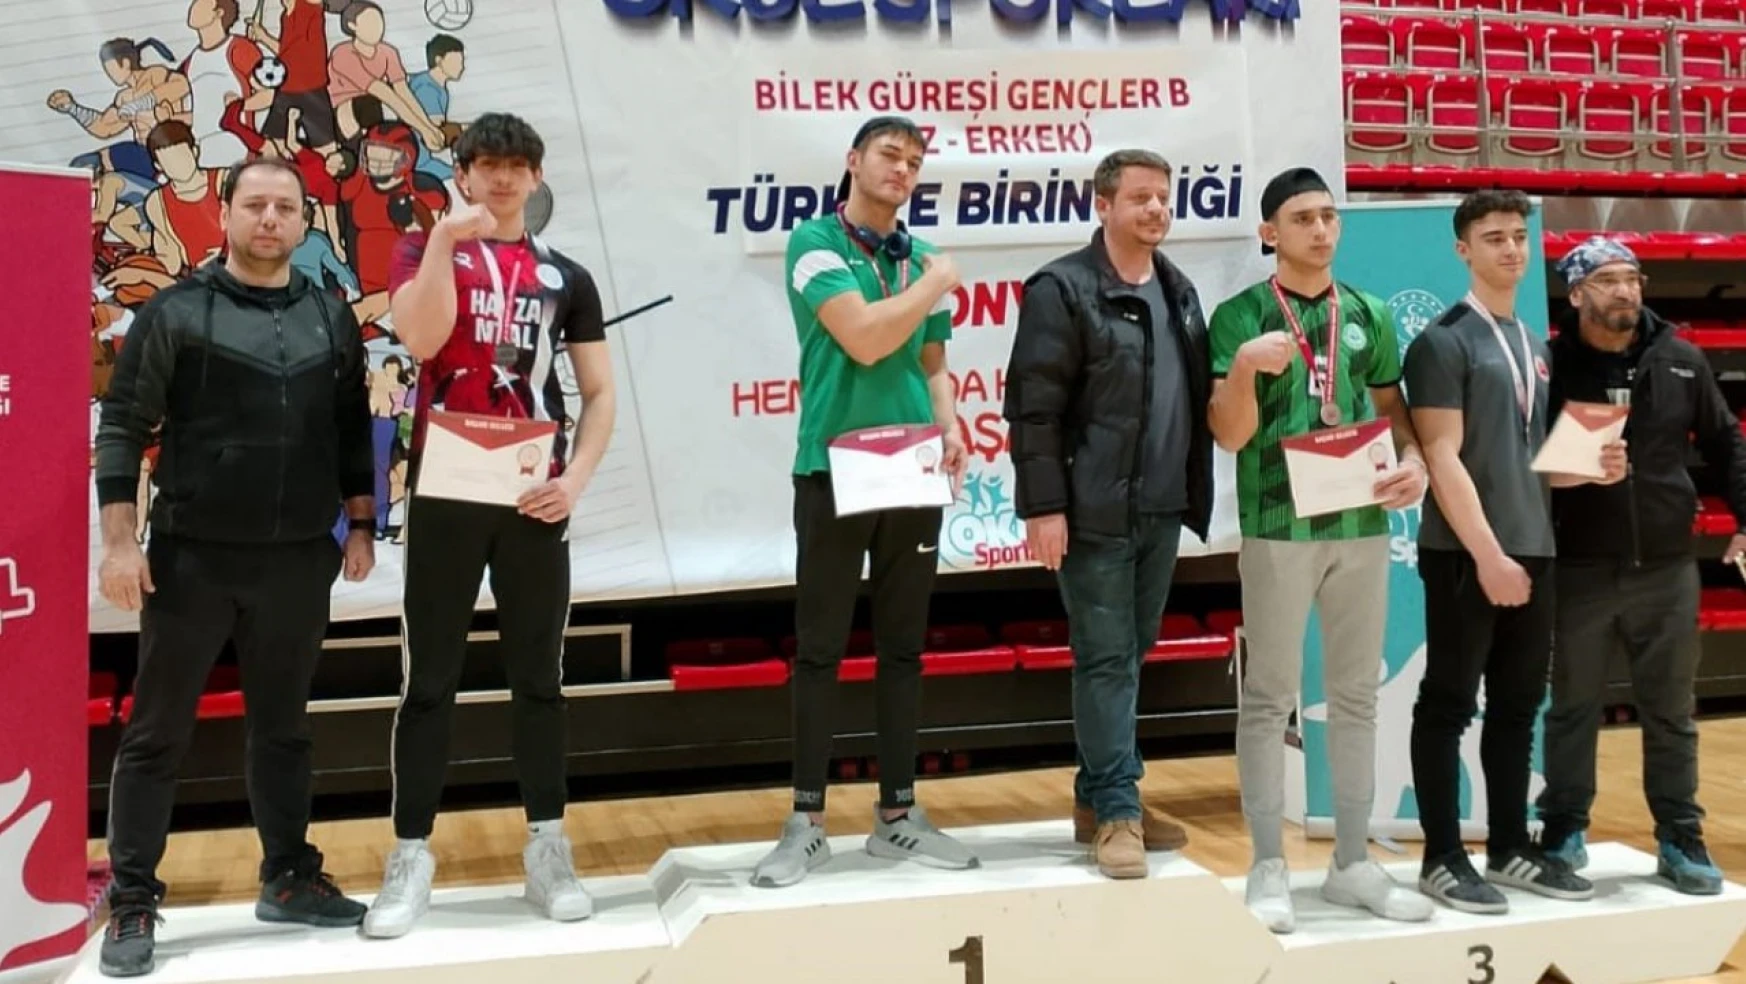 Havzalı Onur, Türkiye ikincisi oldu